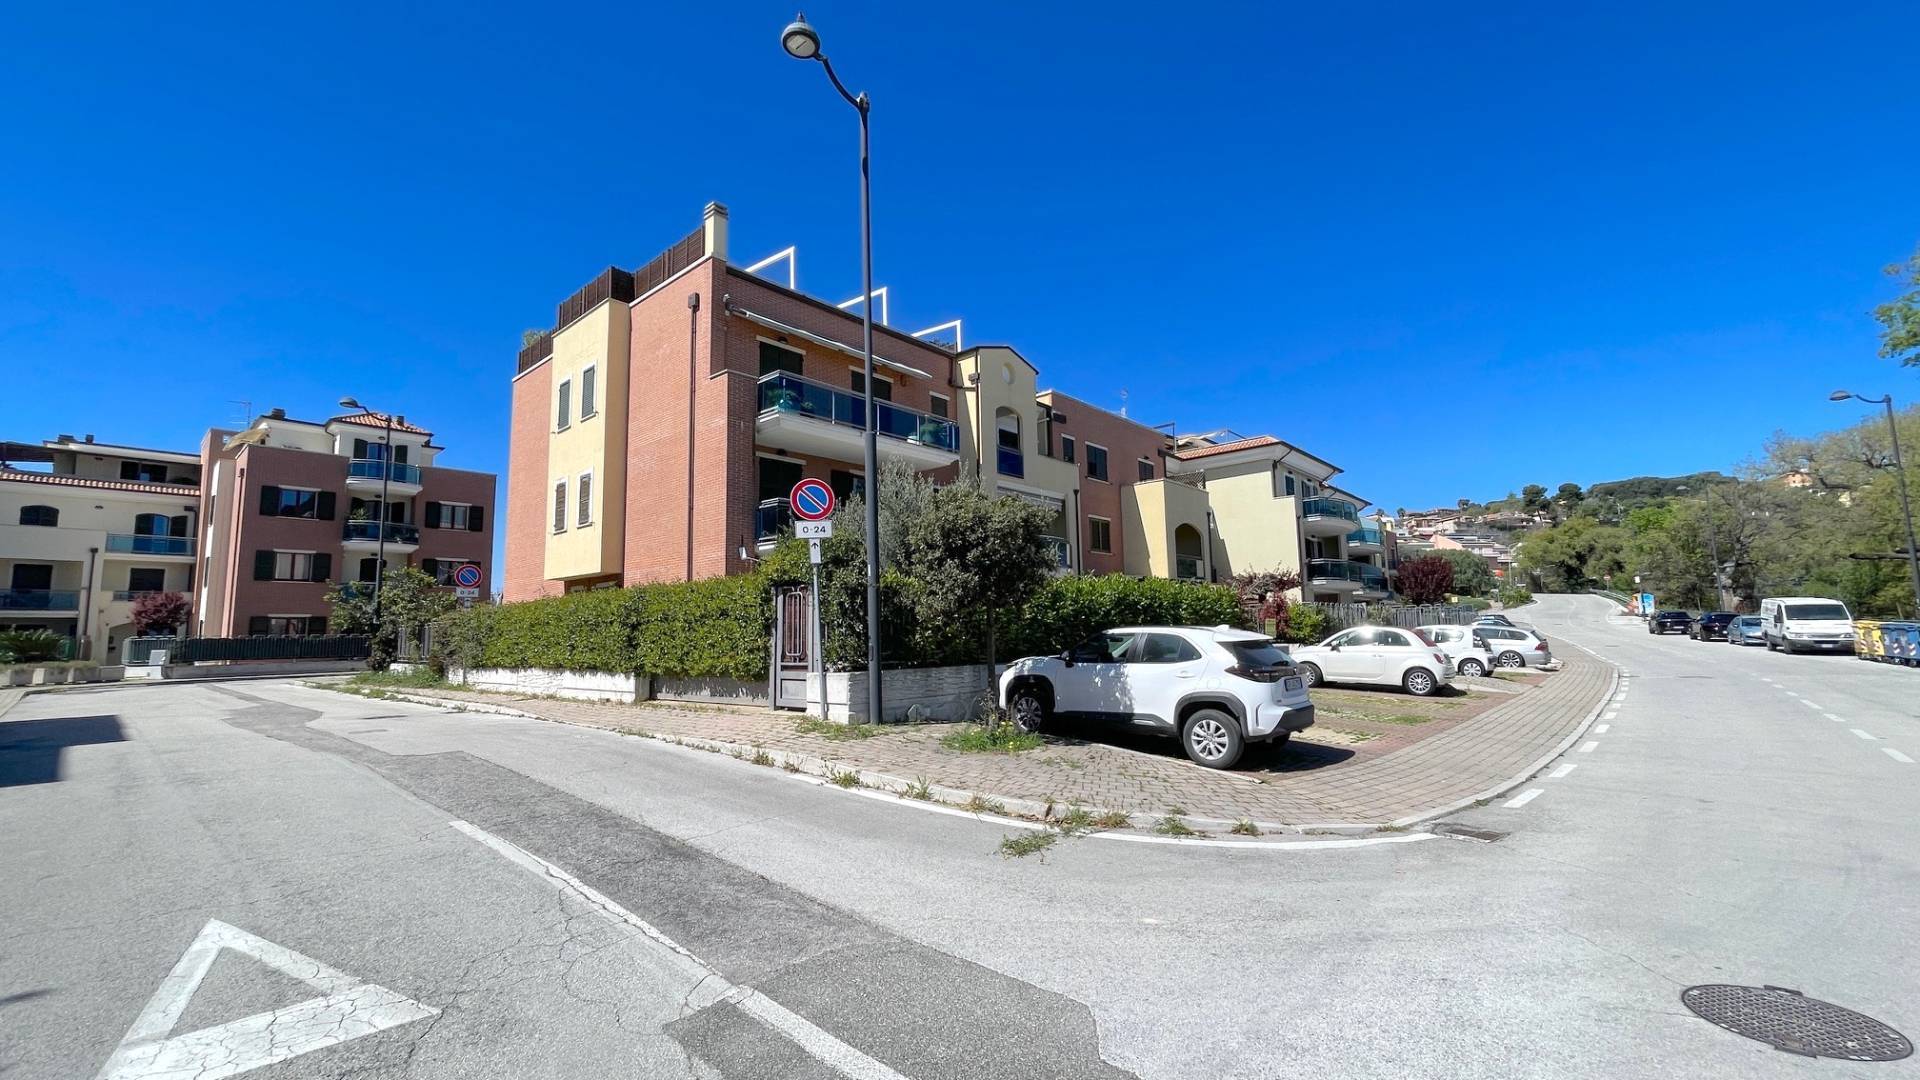 Appartamento in vendita a Grottammare, 4 locali, zona Località: Residenzialenord(sopraLass16,anorddelTesino, Trattative riservate | PortaleAgenzieImmobiliari.it